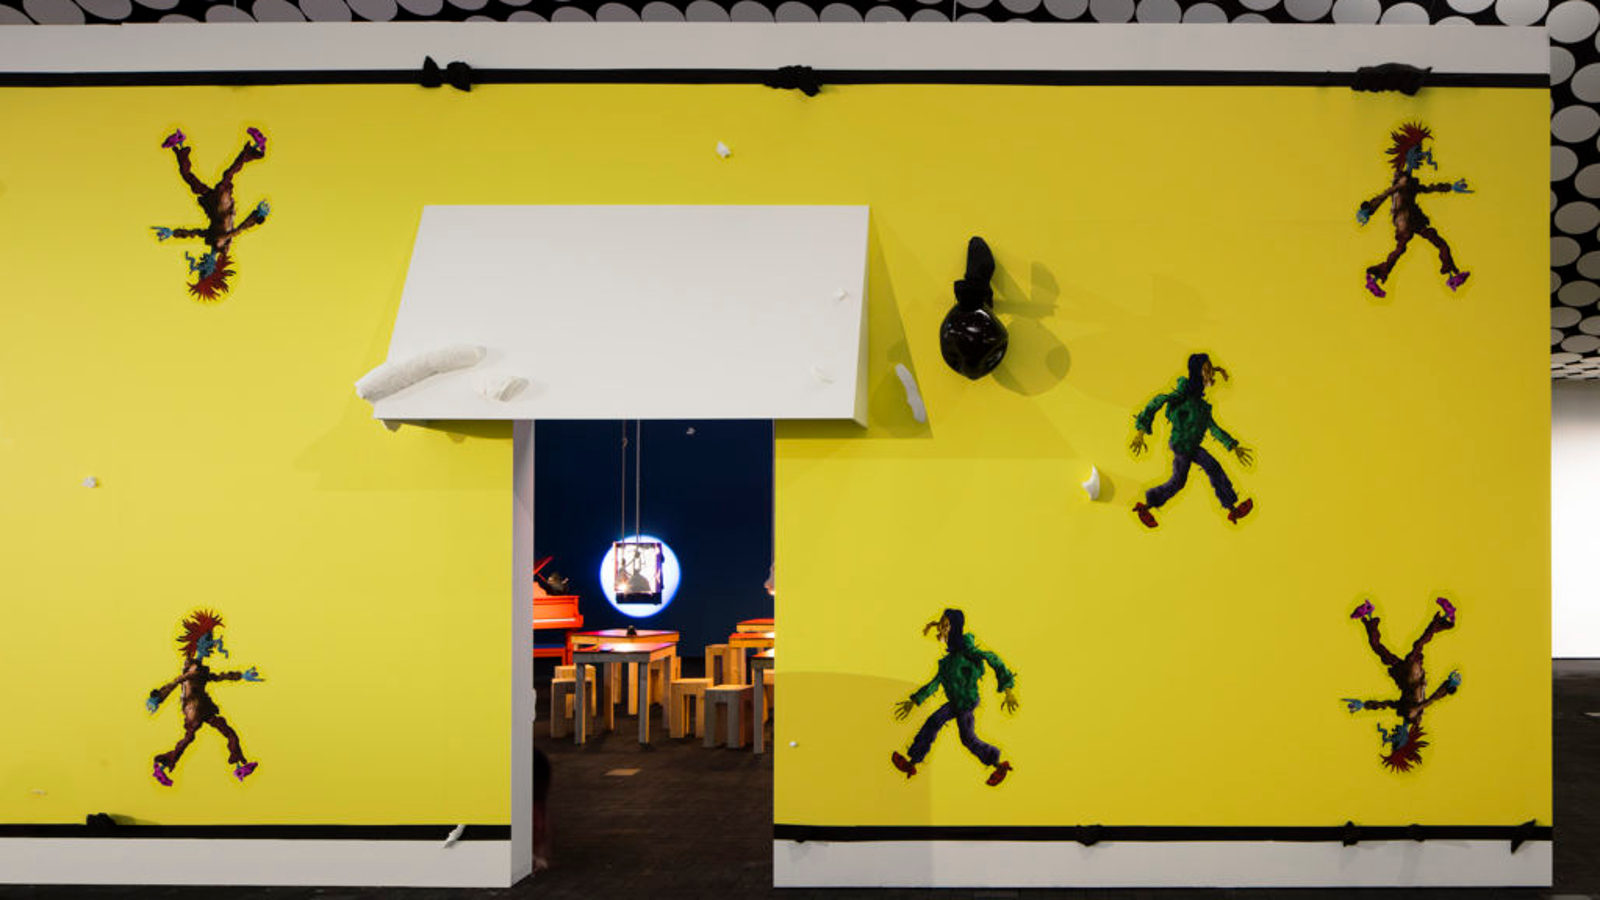 Kuva on osa Ars Fennica -näyttelyä Amos Rexissä.  Kuvassa on voimakkaan keltaisella pohjalla käveleviä hahmoja, joista kaksi kävelee pää alaspäivä ja toiset vastakkaisiin suuntiin. Keskellä on valkoisen markiisiulokkeen kuva ja sen alla oviaukko, josta näkyy Aalto-huonekalujen näköisiä tuoleja ja pöytä.  